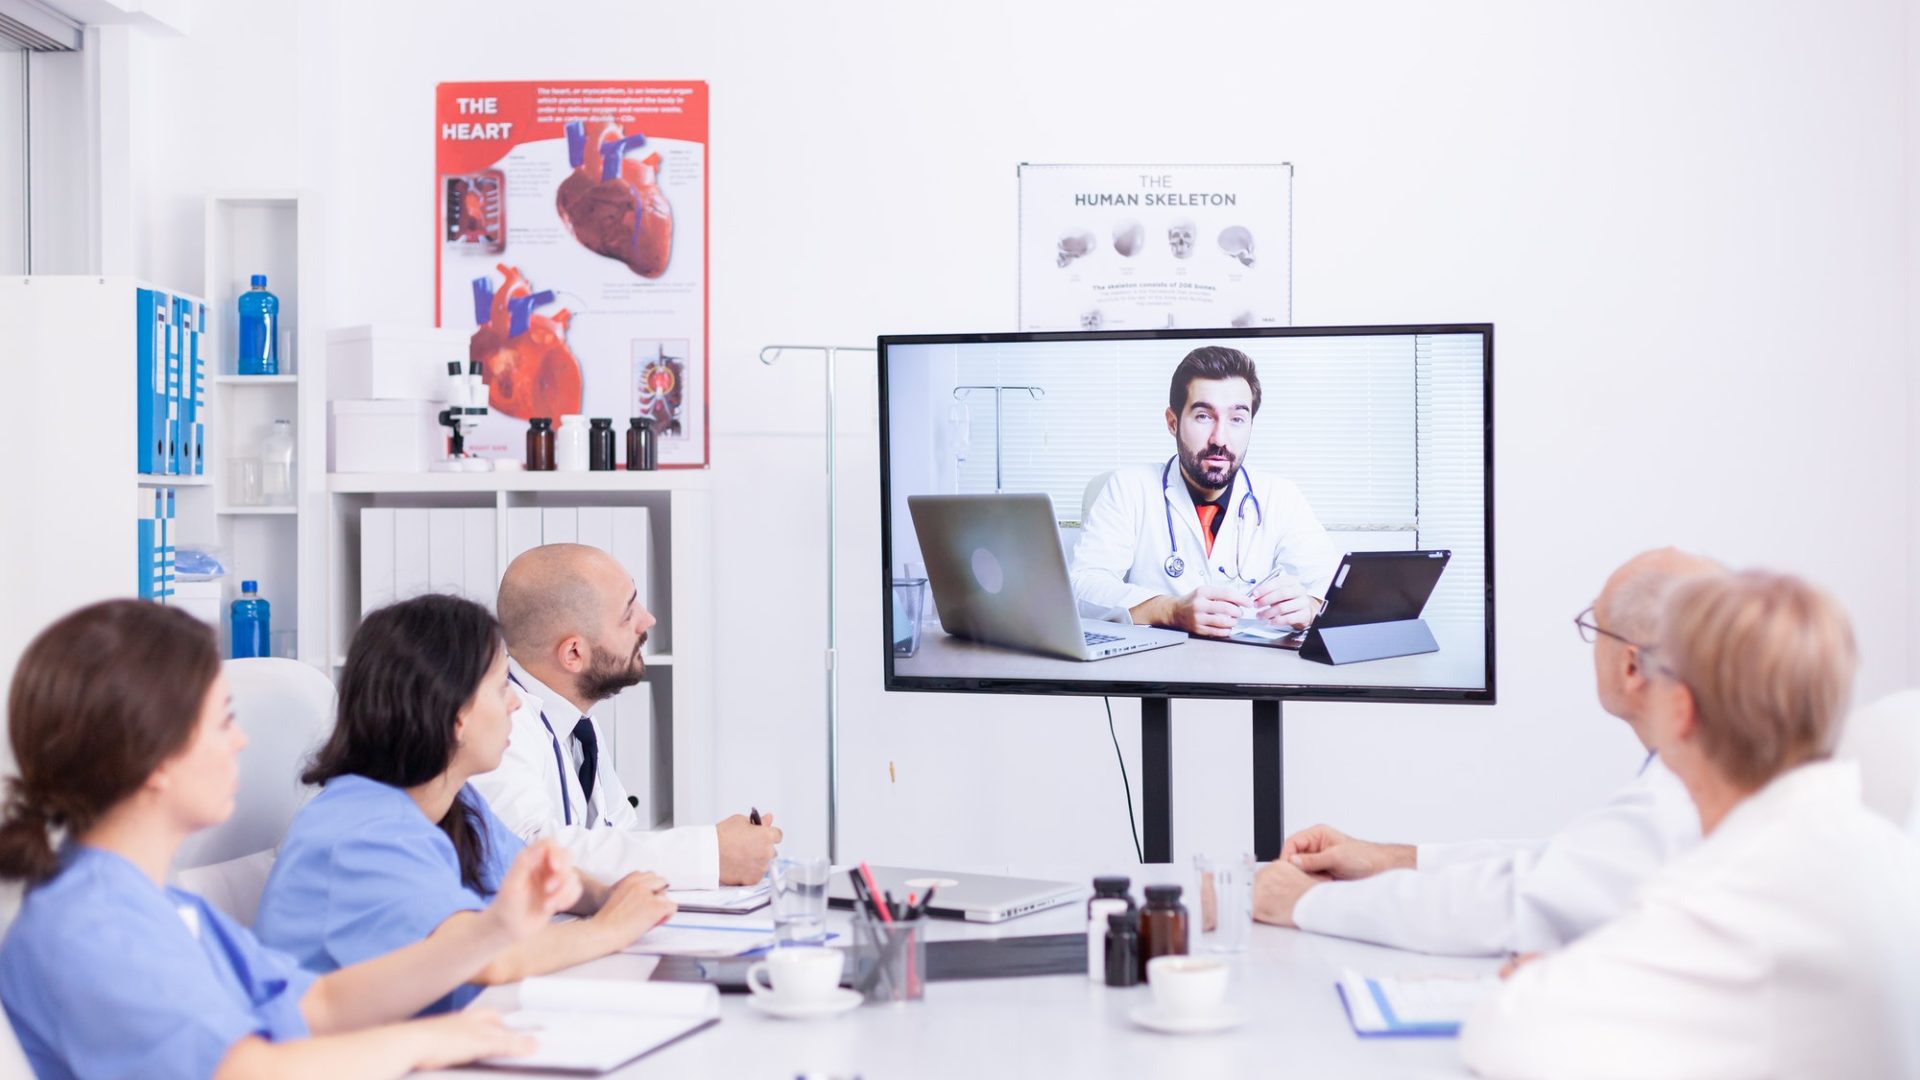 Videoconference of hospital team